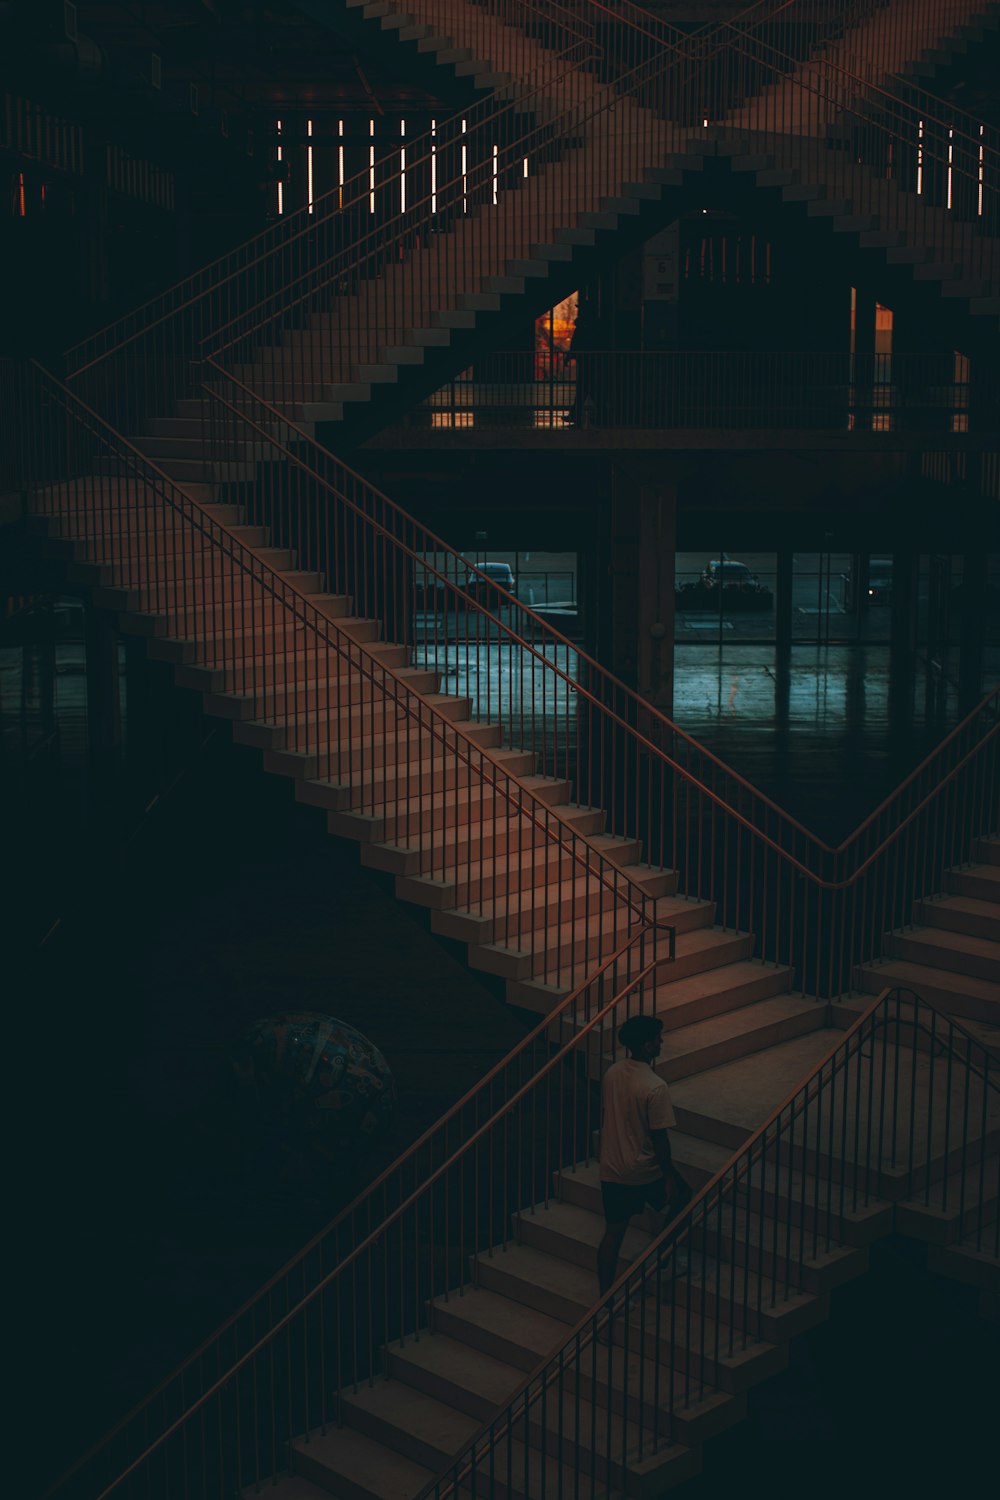 Un hombre bajando unas escaleras por la noche